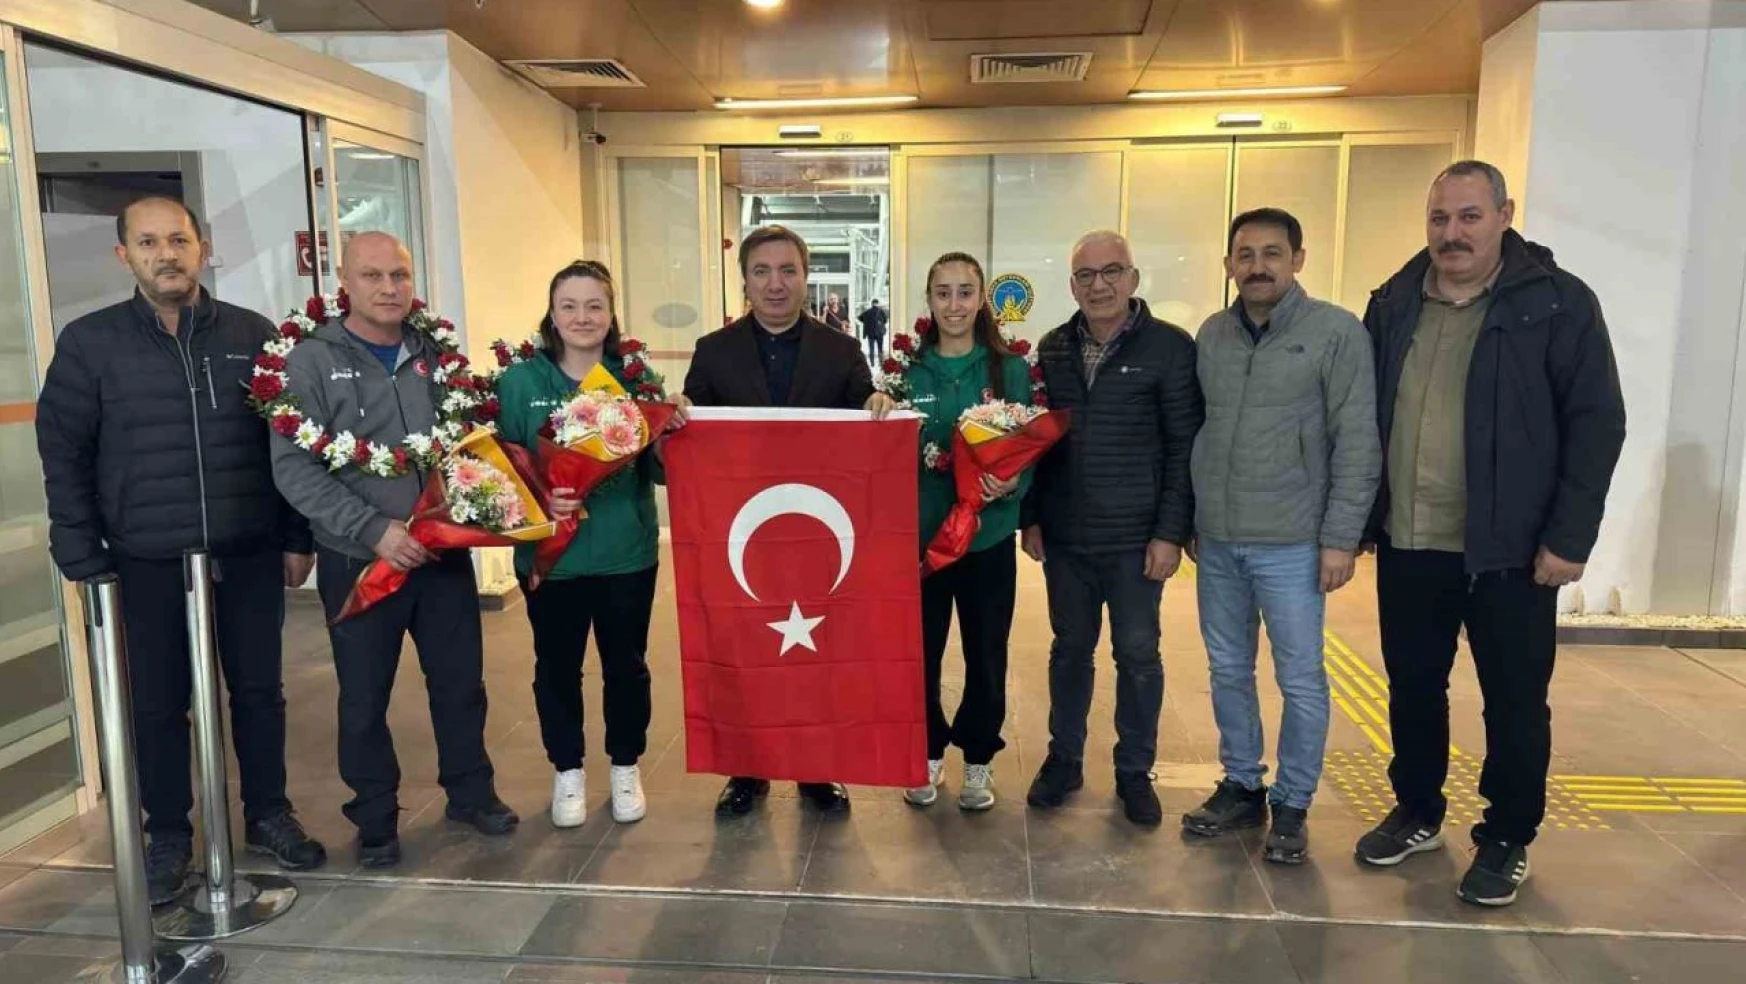 Almanya'da tarih yazan Erzincanlı kızlara havalimanında karşılama